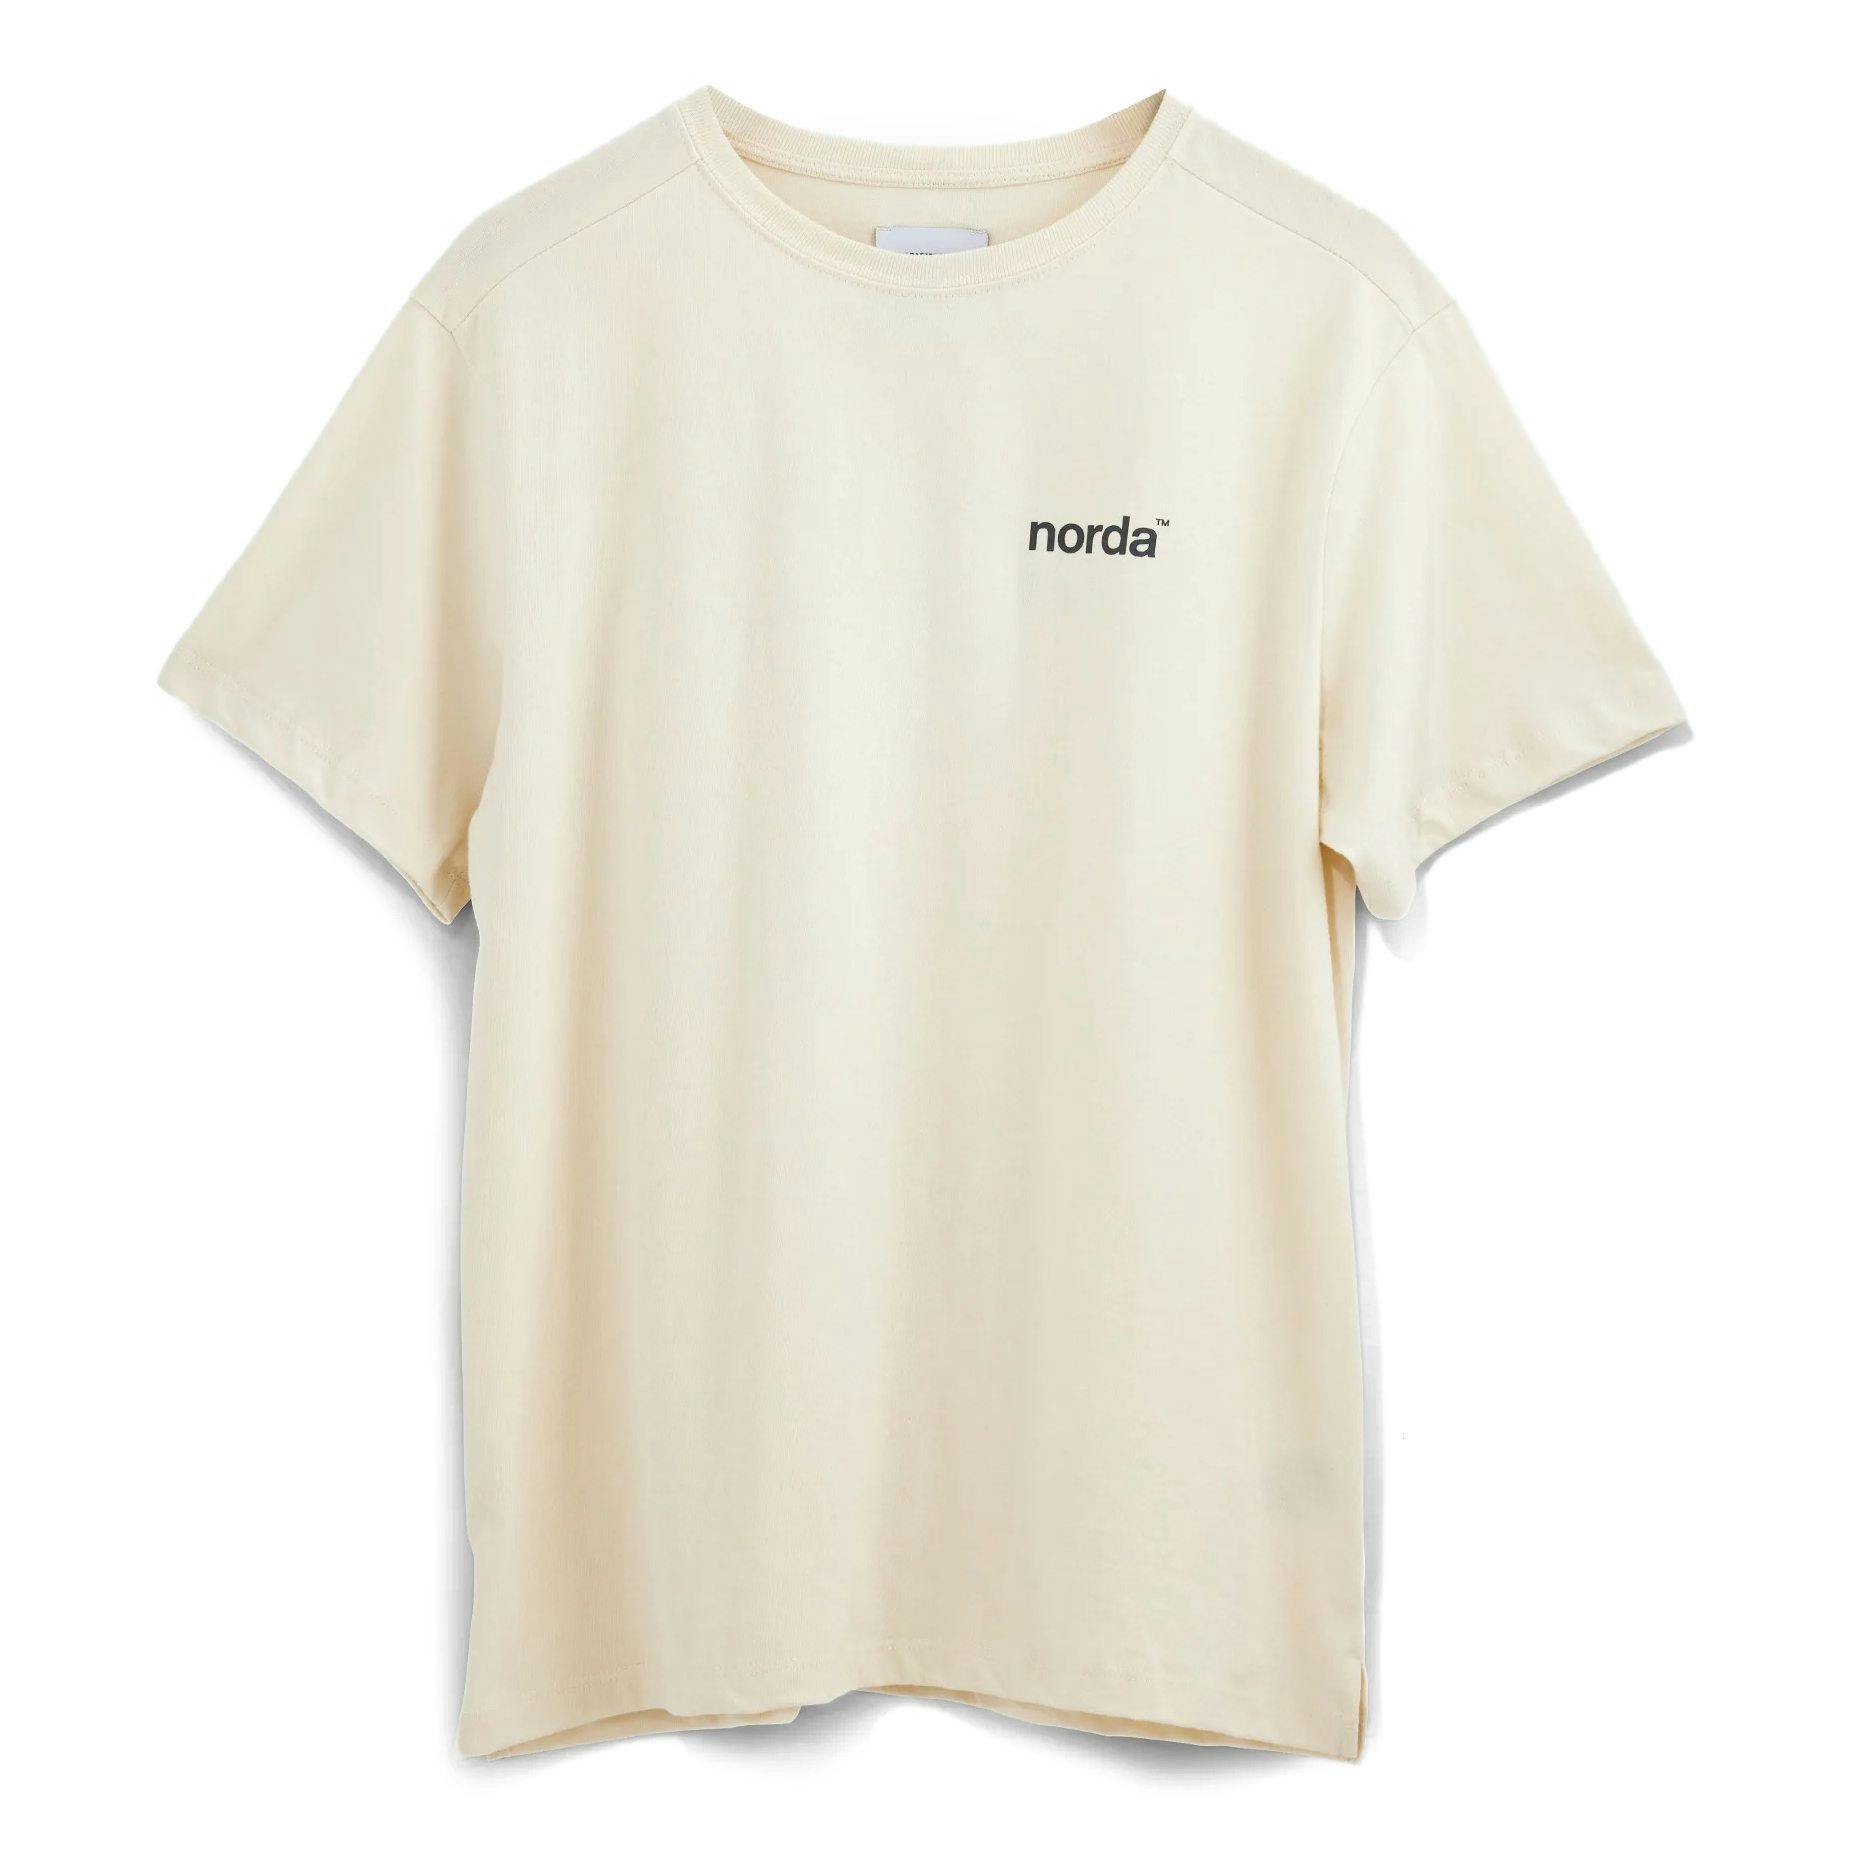 Burger Sanctie benzine Norda Unisex Organic Cotton T-Shirt - Cream/Grey | T-Shirts | Huckberry